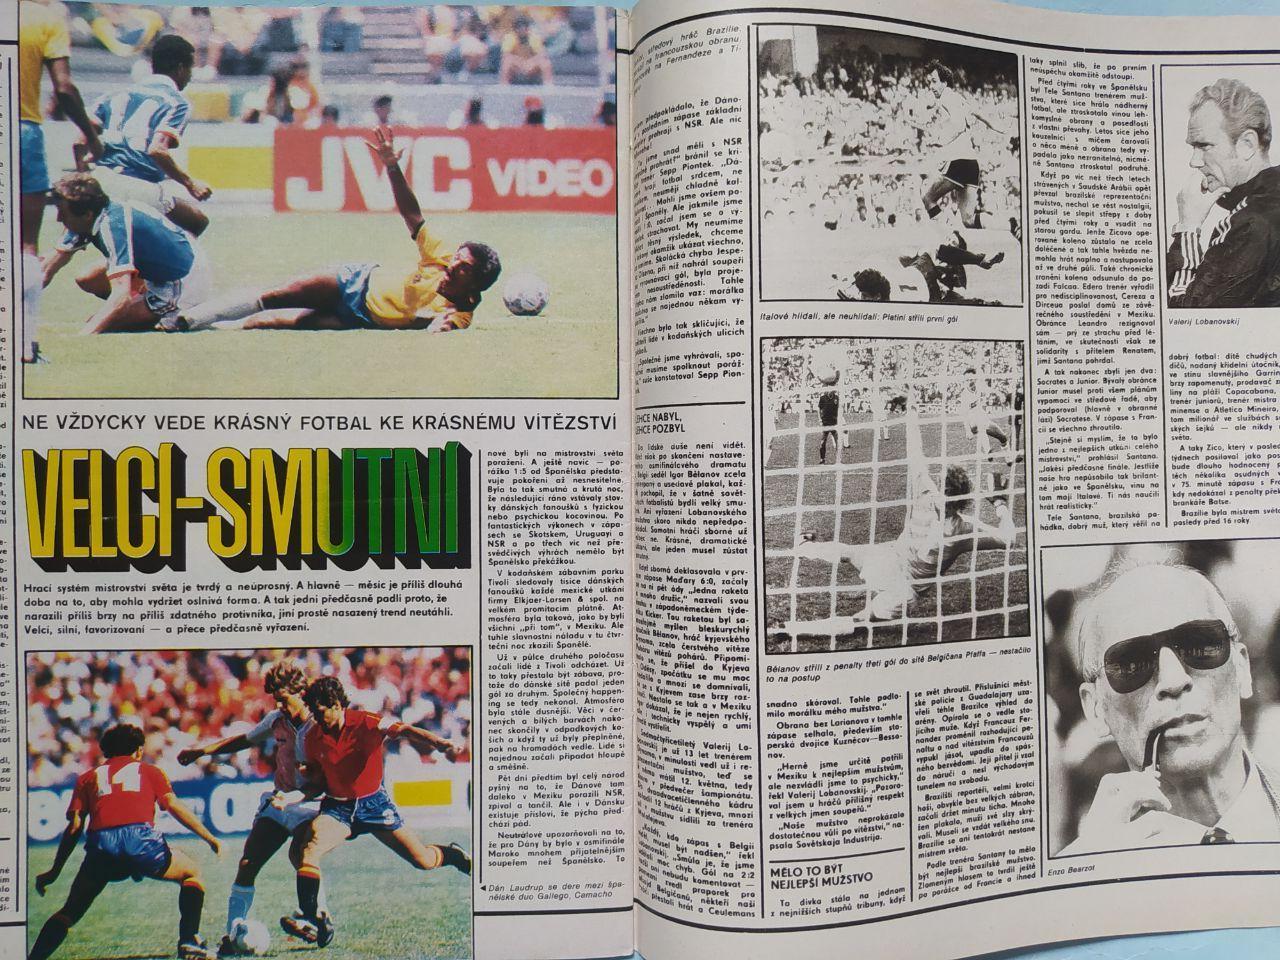 Спецвыпуск Стадион Чехия № 30 за 1986 г. посвящен чм футбол в Мексике 1986 г. 6